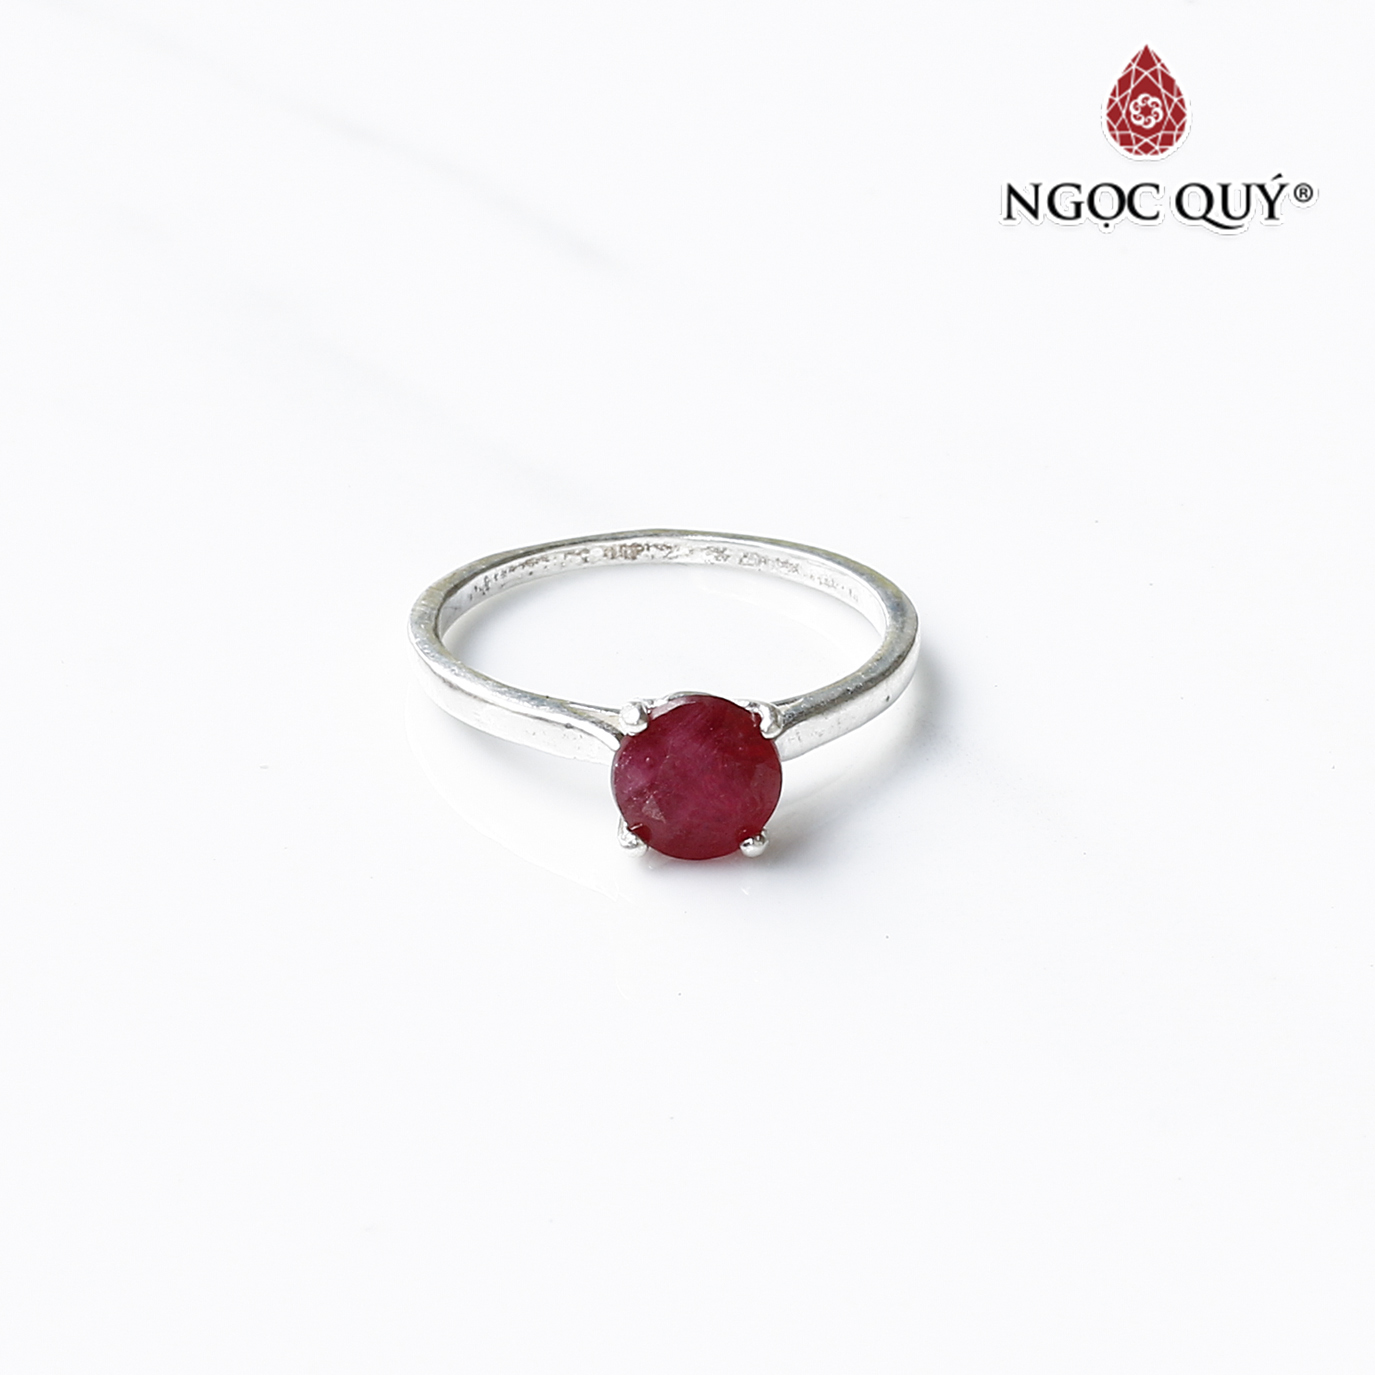 Nhẫn đá ruby - Nếu bạn đang tìm kiếm một món quà ý nghĩa dành cho người thân yêu, nhẫn đá ruby chắc chắn sẽ là một lựa chọn không thể bỏ qua. Với sắc đỏ lấp lánh của đá ruby và thiết kế tinh xảo, chiếc nhẫn sẽ là một phụ kiện thời trang tuyệt vời cho người đeo.